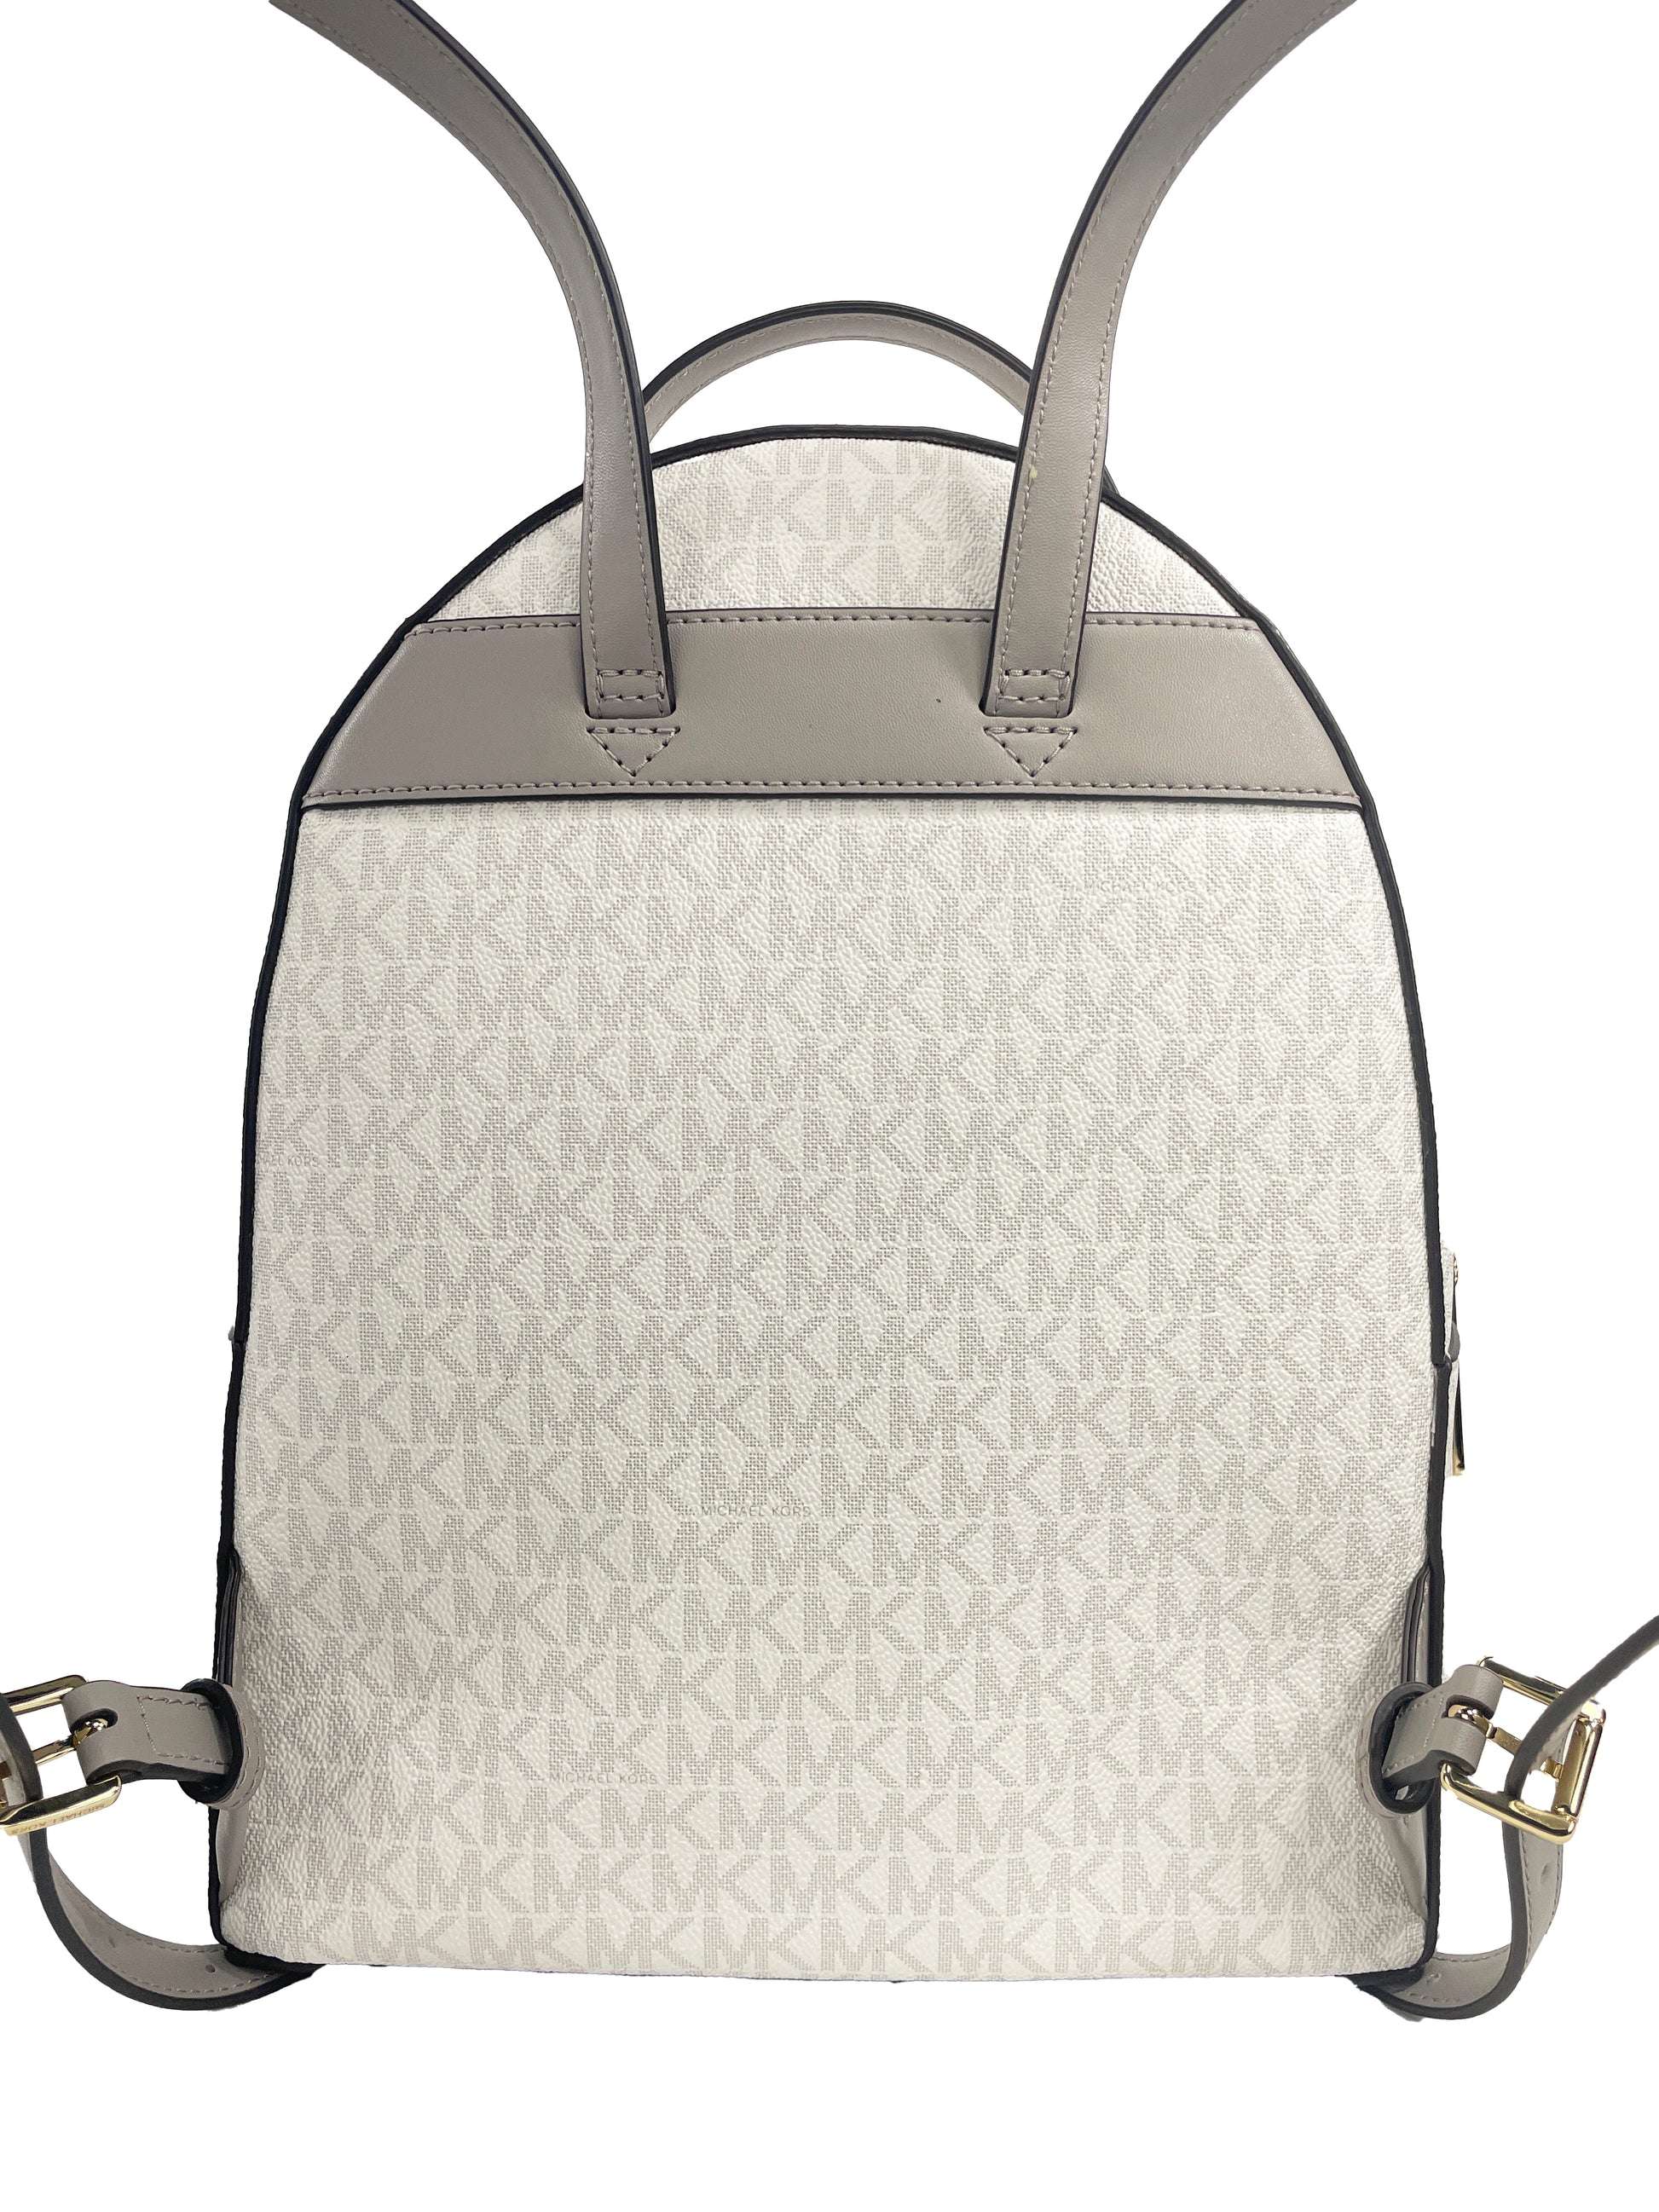 Michael Kors Sheila Medium Front Pocket Backpack Bag